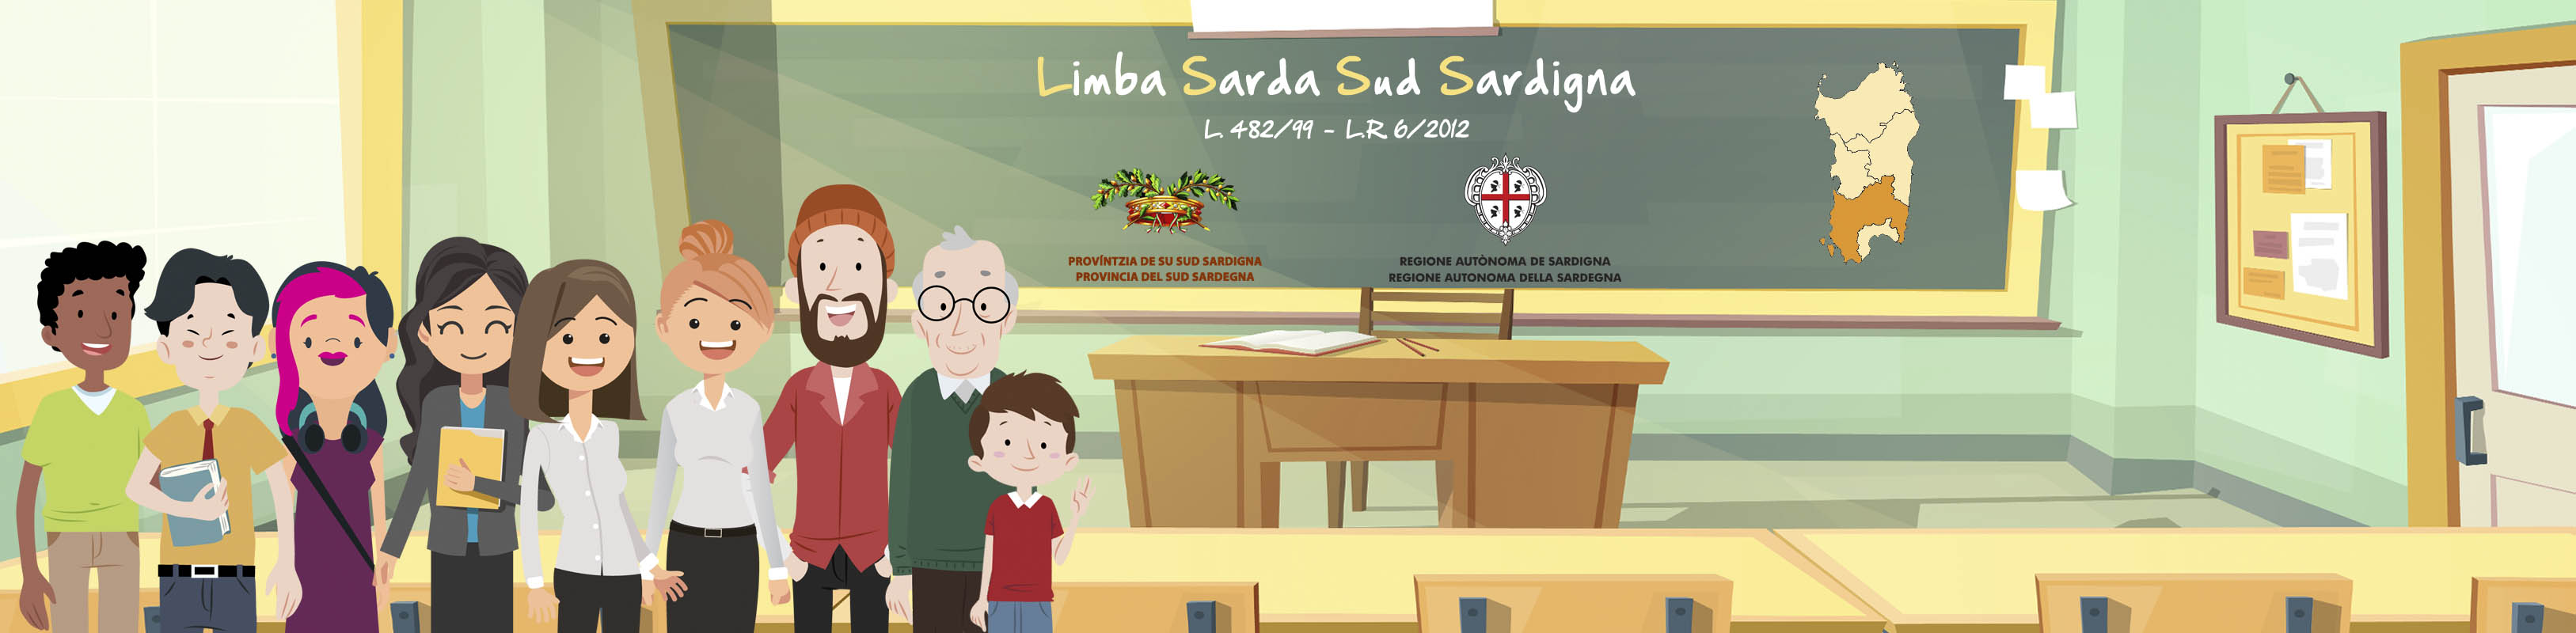 Corso di Lingua Sarda di II livello on-line, gratuito.